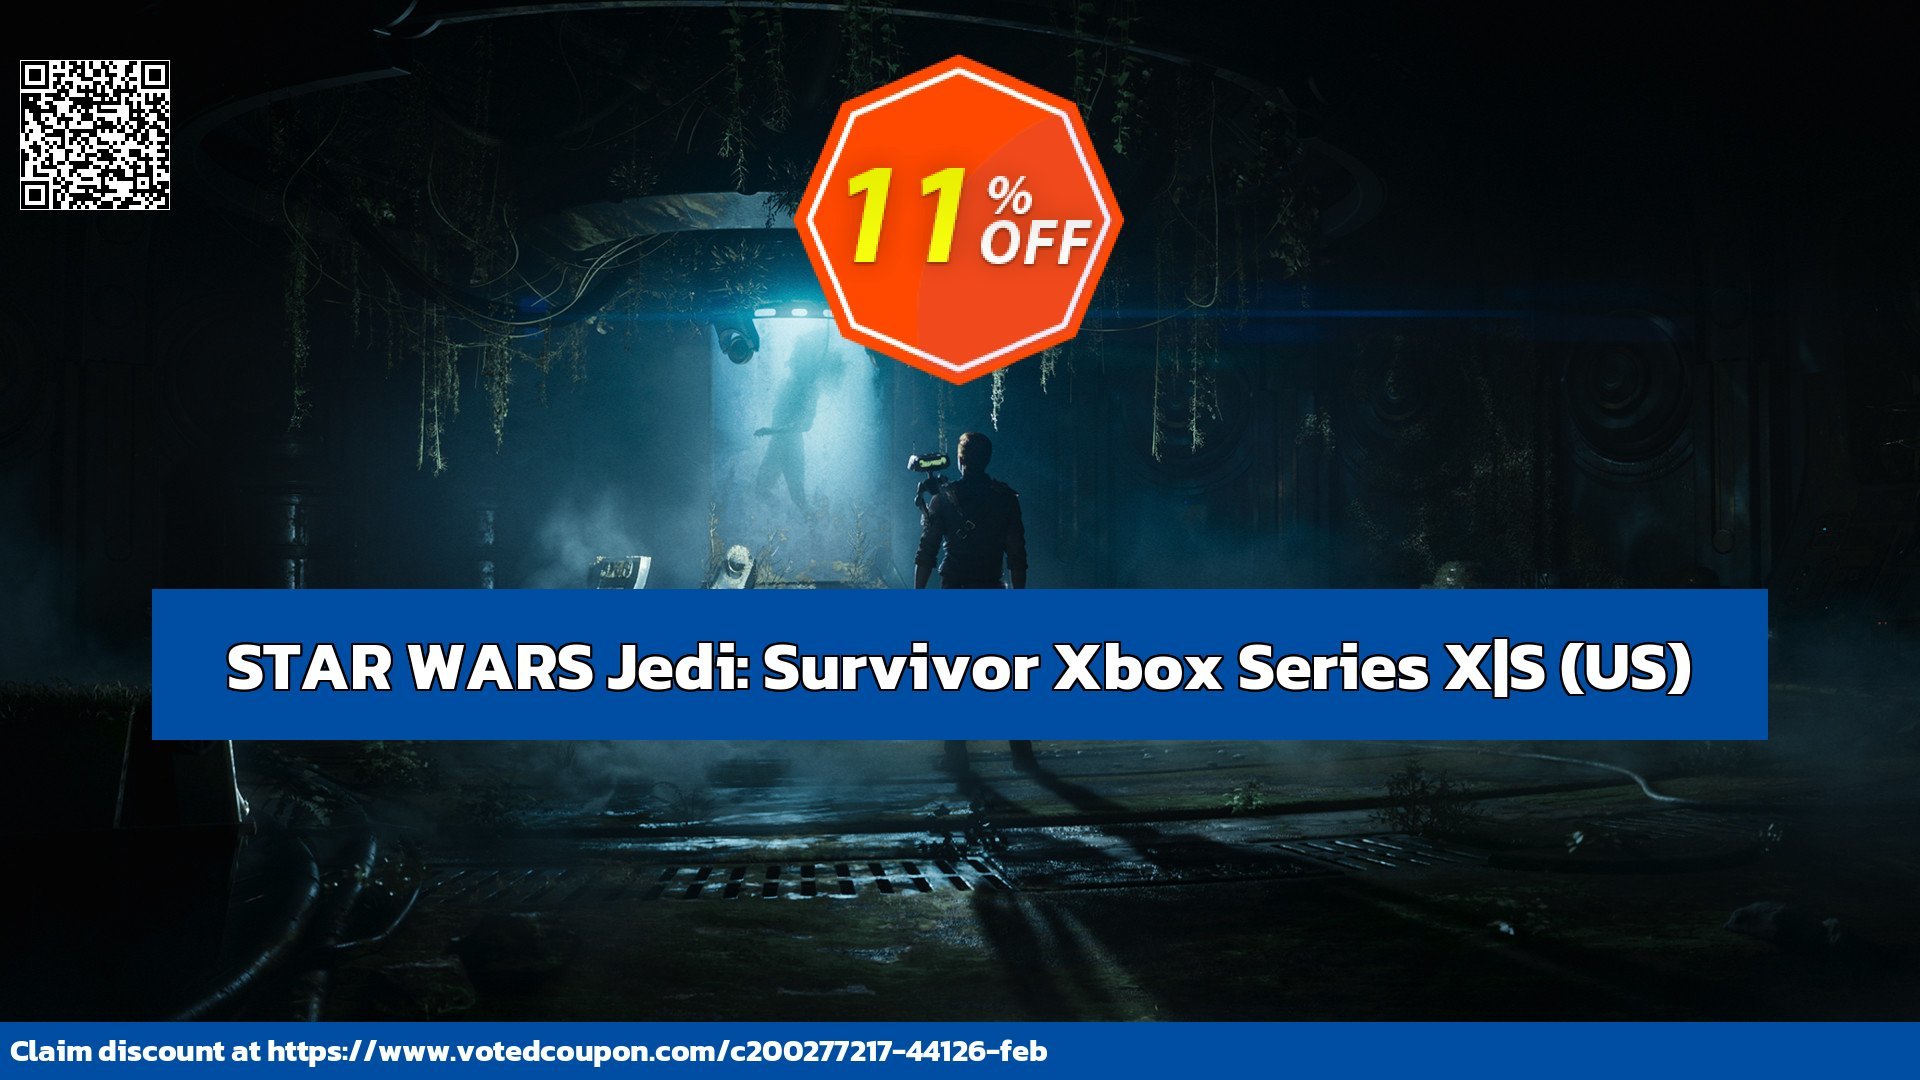 STAR WARS Jedi: Survivor Xbox Series X|S, US  Coupon, discount STAR WARS Jedi: Survivor Xbox Series X|S (US) Deal CDkeys. Promotion: STAR WARS Jedi: Survivor Xbox Series X|S (US) Exclusive Sale offer